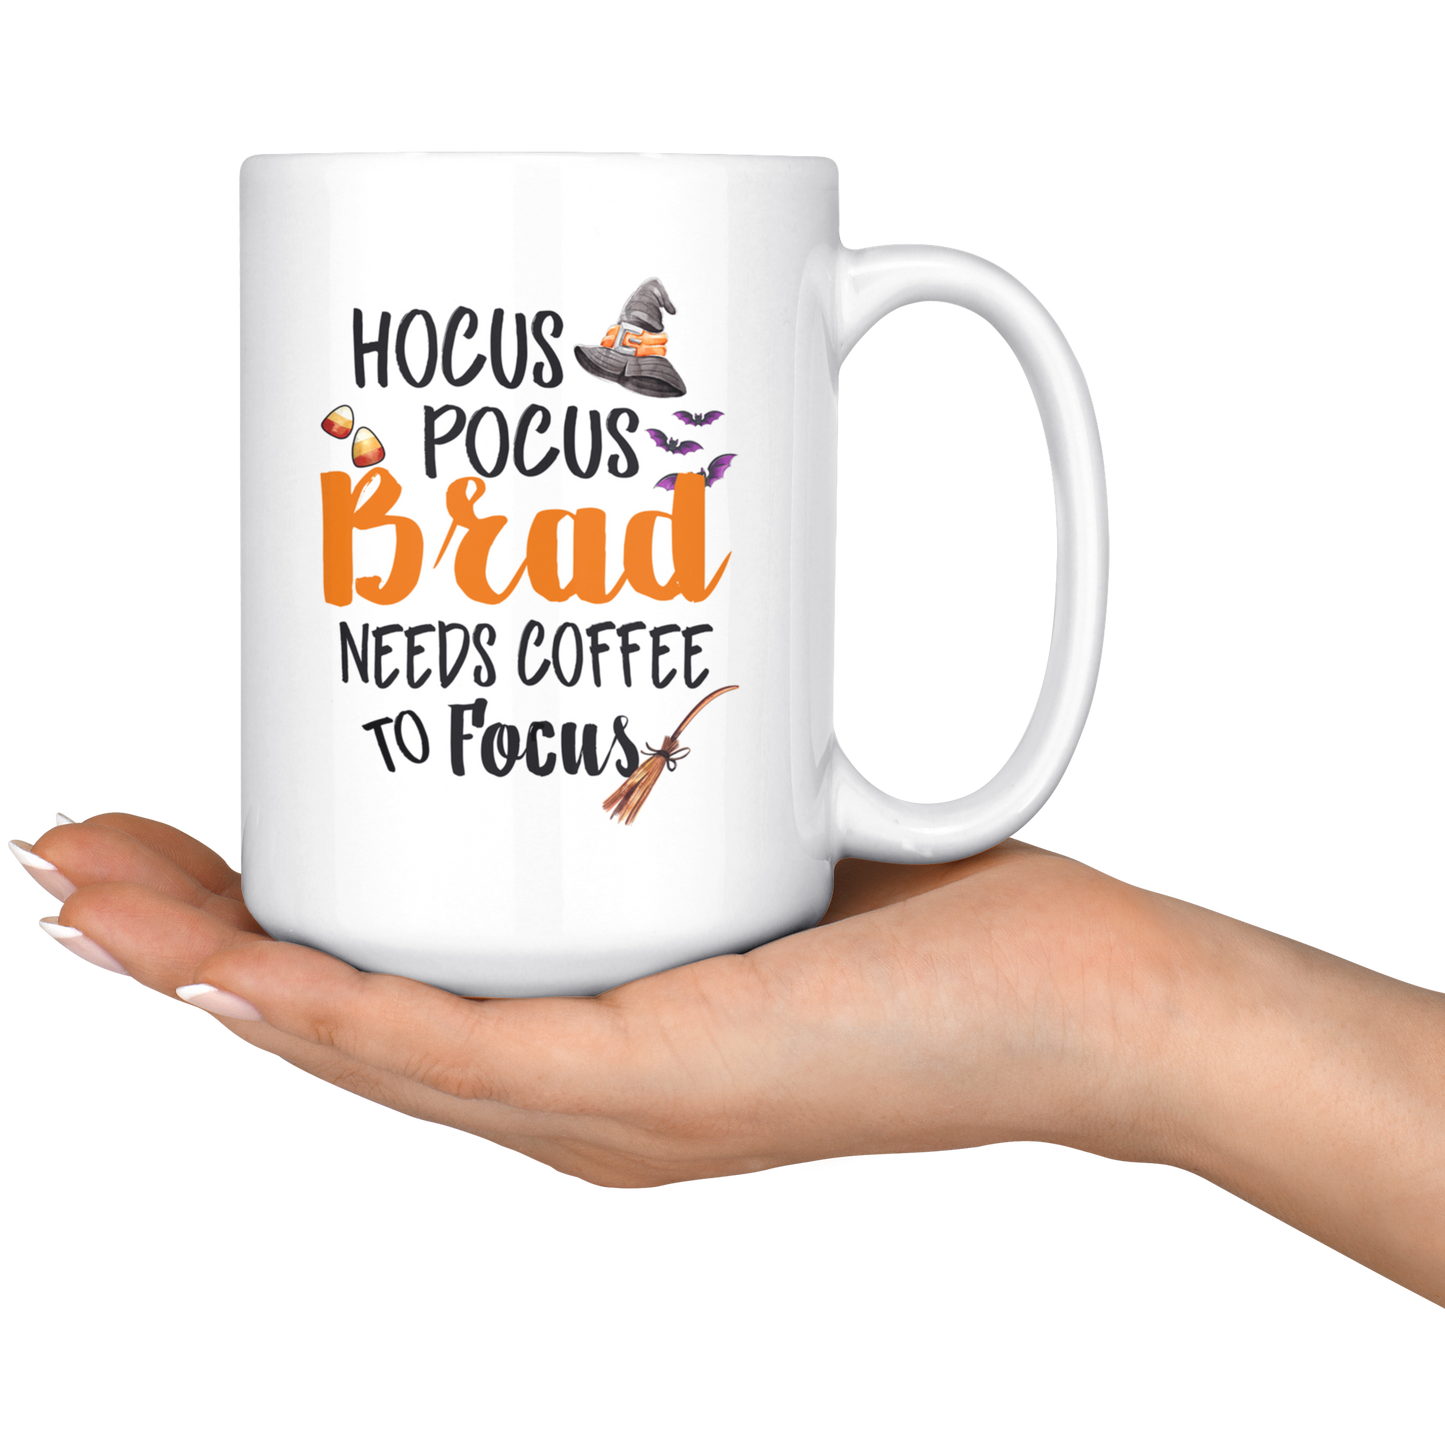 ND-20837725-sp-25439 - [ Brad | 1 | 1 ] (mug_15oz_white) 15oz. Ceramic Mug - Hocus Pocus Brad Needs Coffee To Focus -